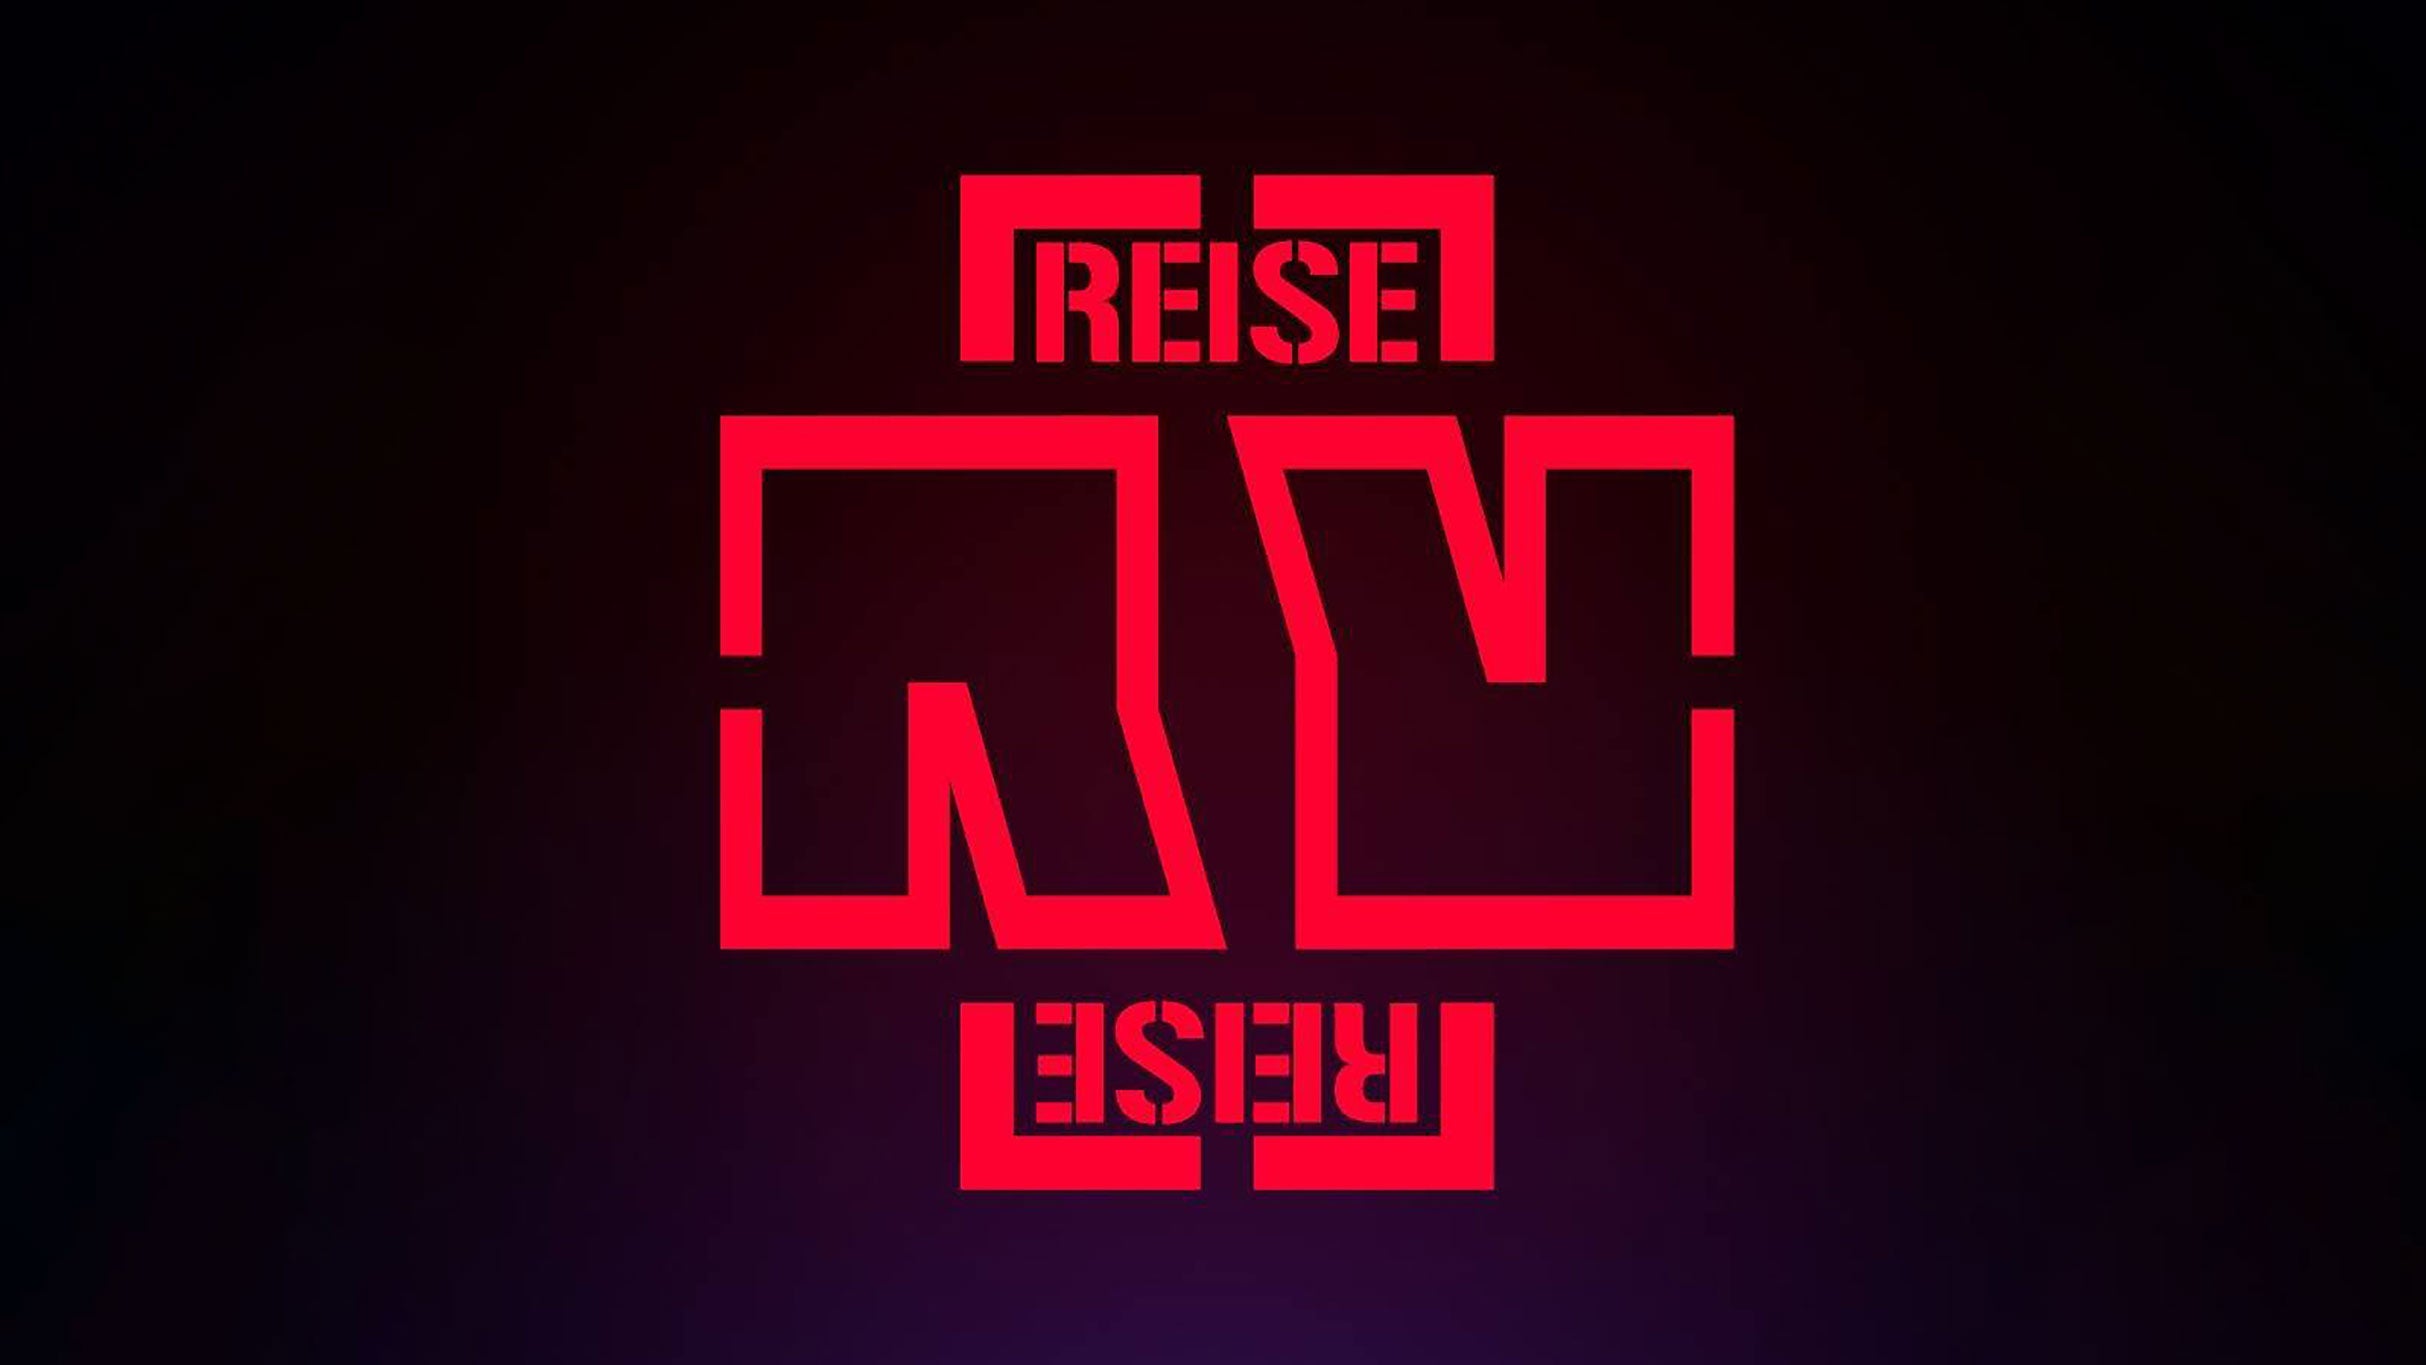 Reise Reise presale information on freepresalepasswords.com